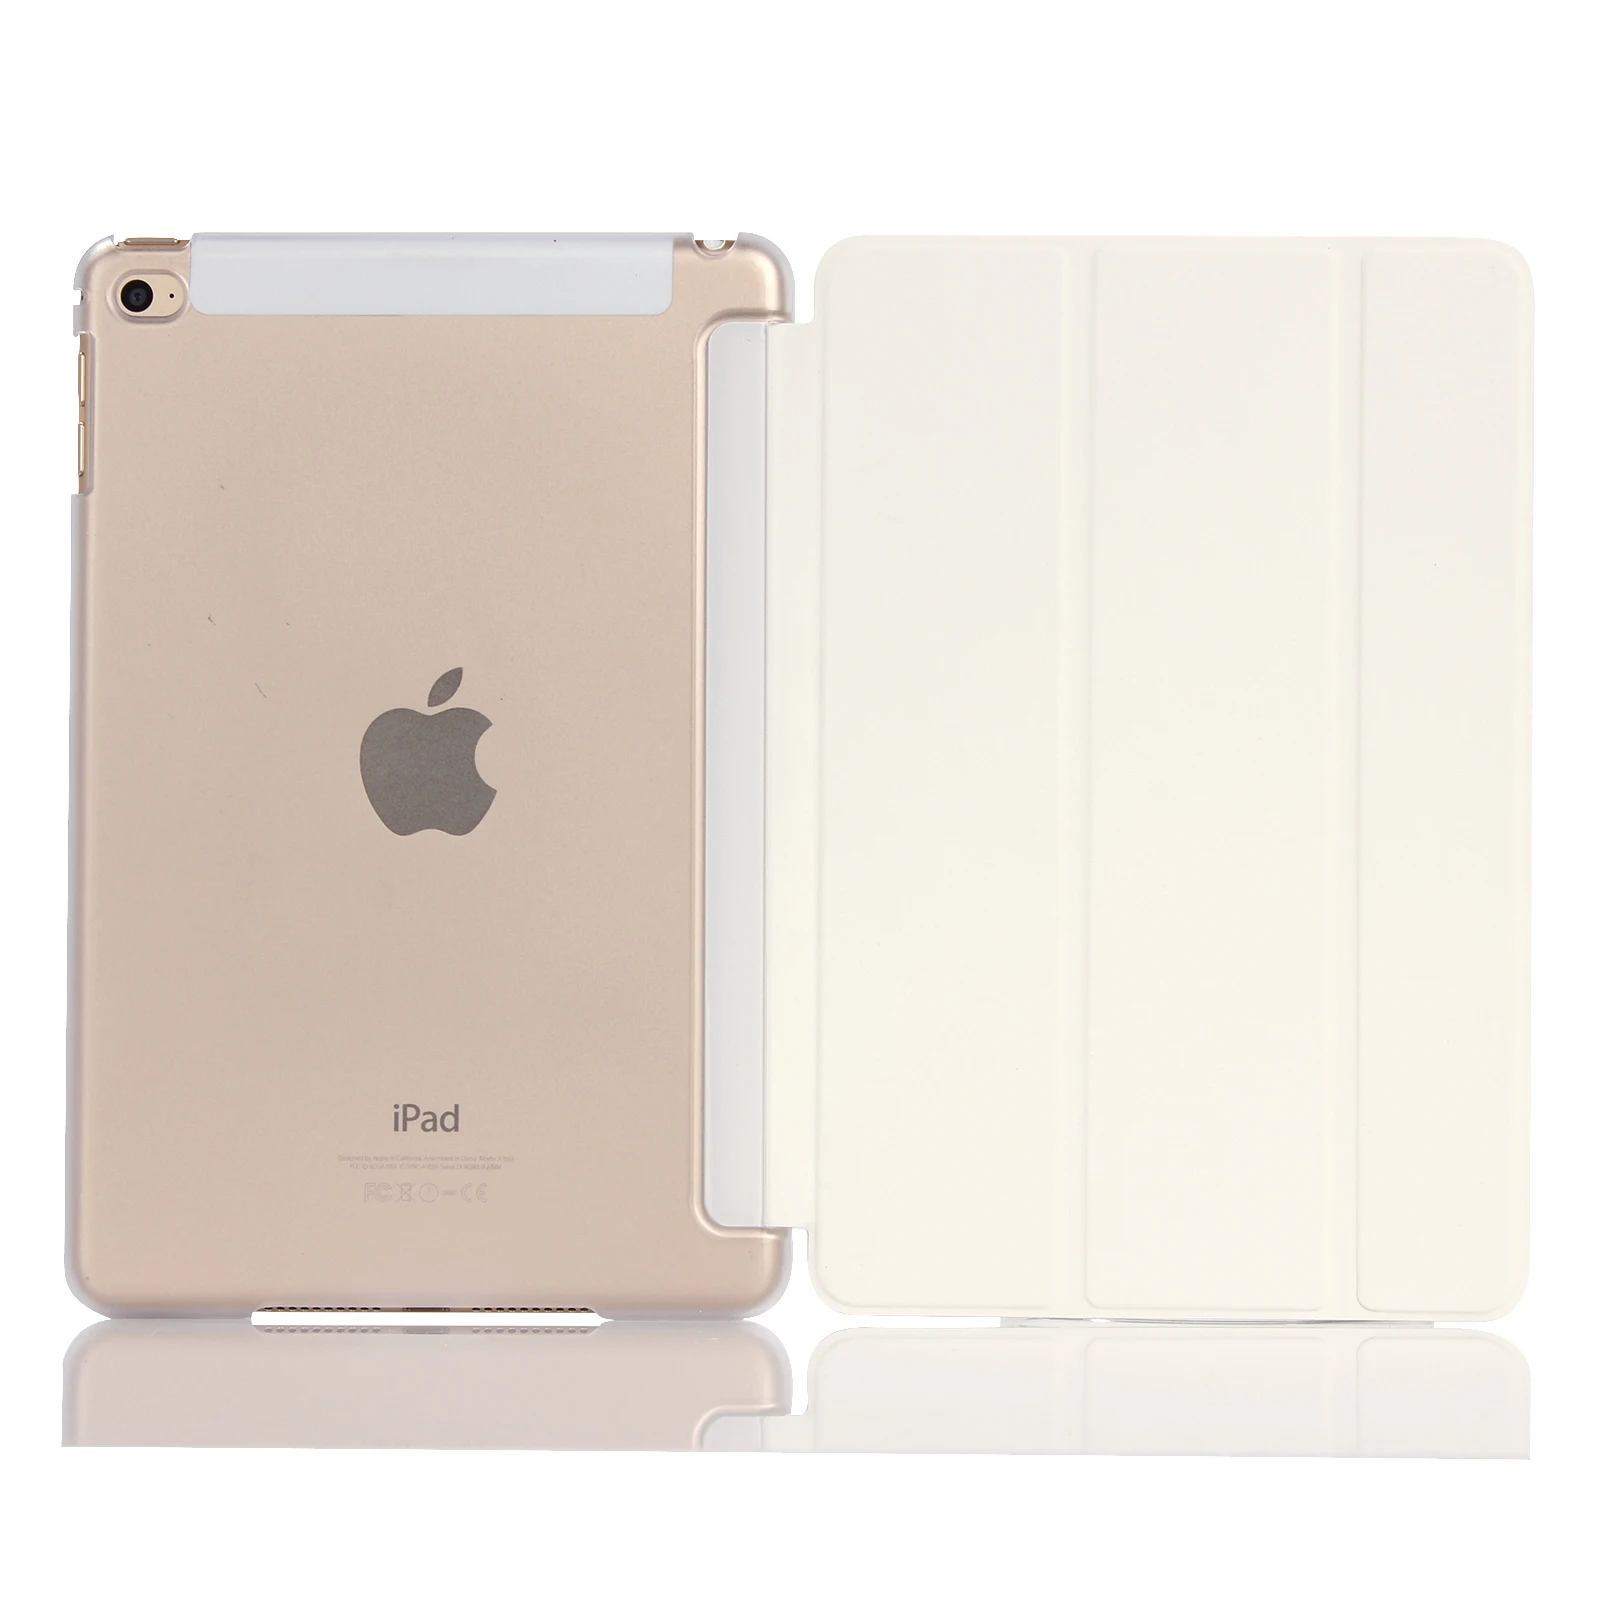 Умный чехол для ipad mini 4 ультра тонкий флип из искусственной кожи чехол+ PC полупрозрачный чехол для Apple ipad mini 4# C - Цвет: white